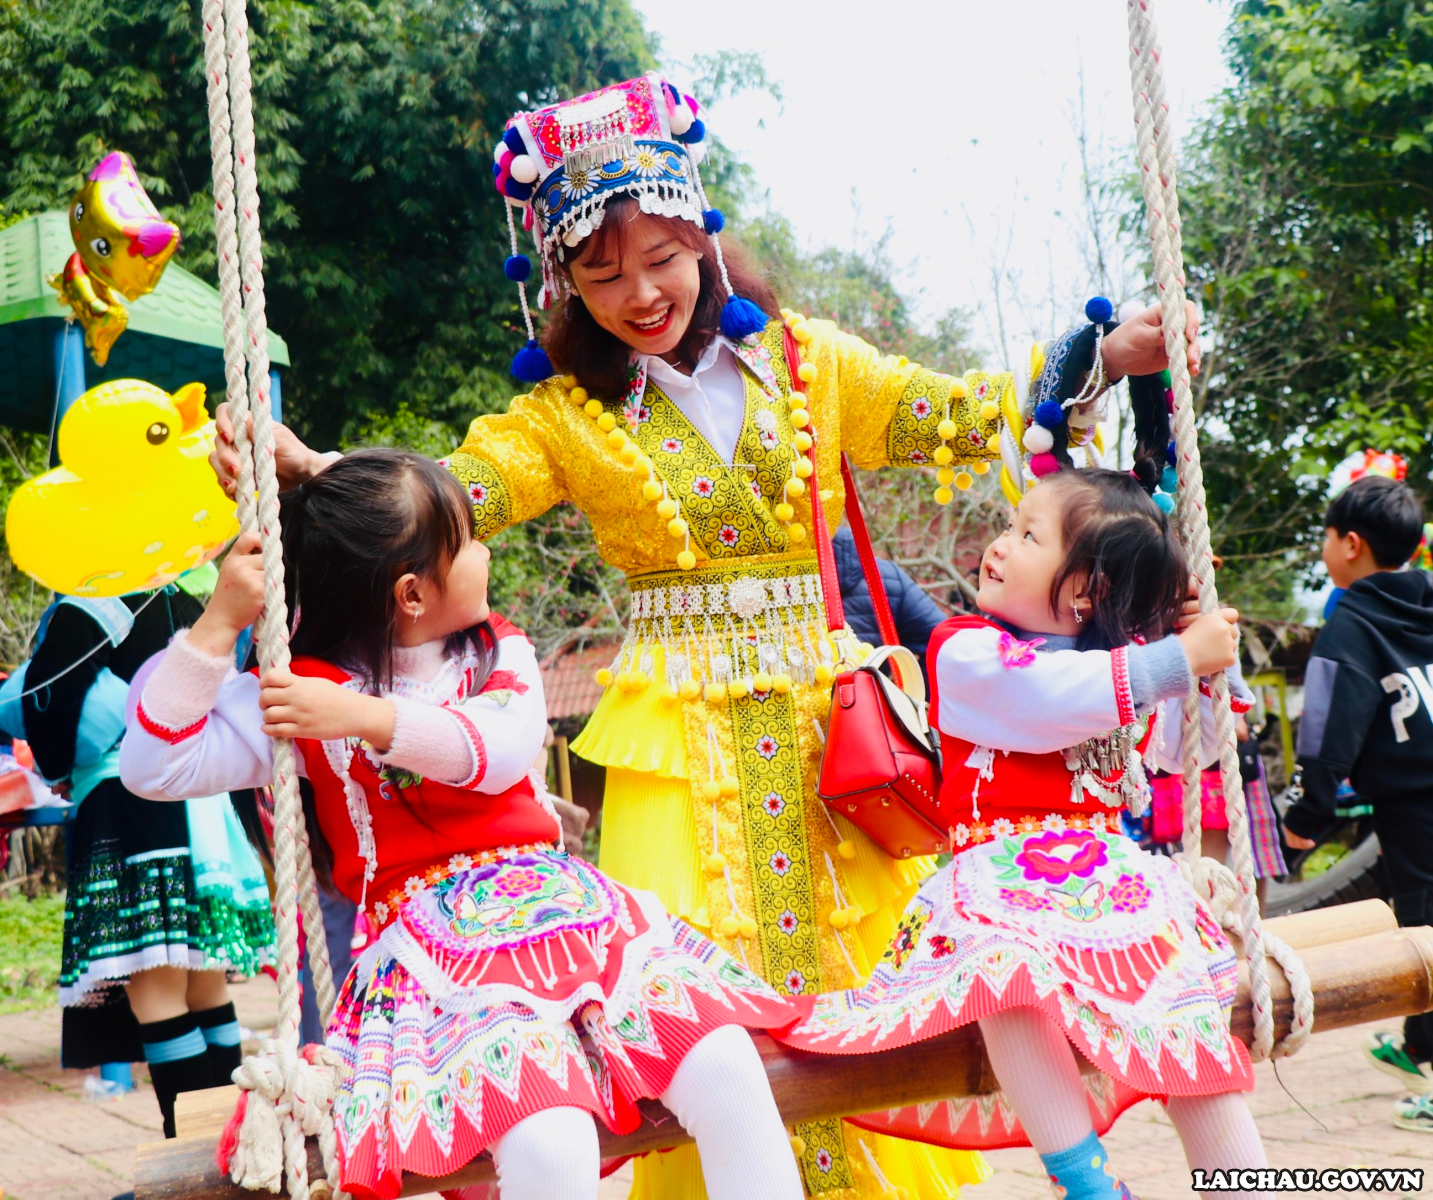 Ngày nay, trang phục dân tộc Mông còn được cách tân với các gam màu sặc sỡ. Theo chia sẻ của bà mẹ trẻ, bộ trang phục của 2 bé gái là bộ cách tân cô Tấm của dân tộc Mông.